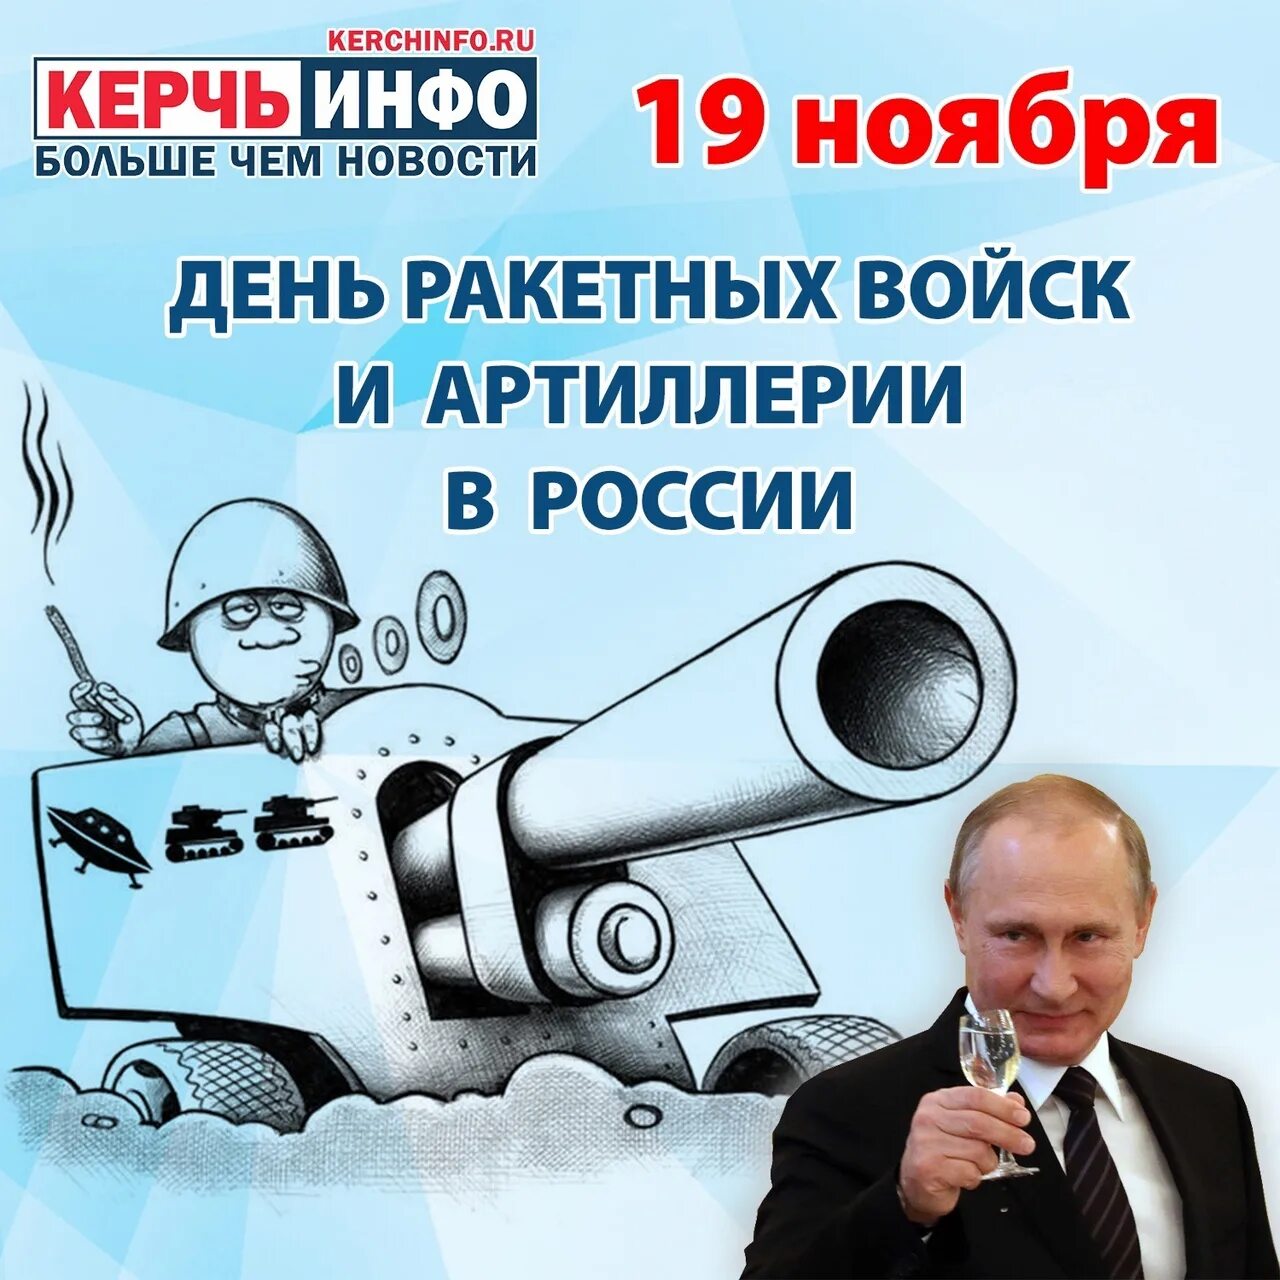 День ракетных войск и артиллерии 19 ноября. День РВИА 19 ноября. 19 Ноября день ракетных войск и артиллерии в России.